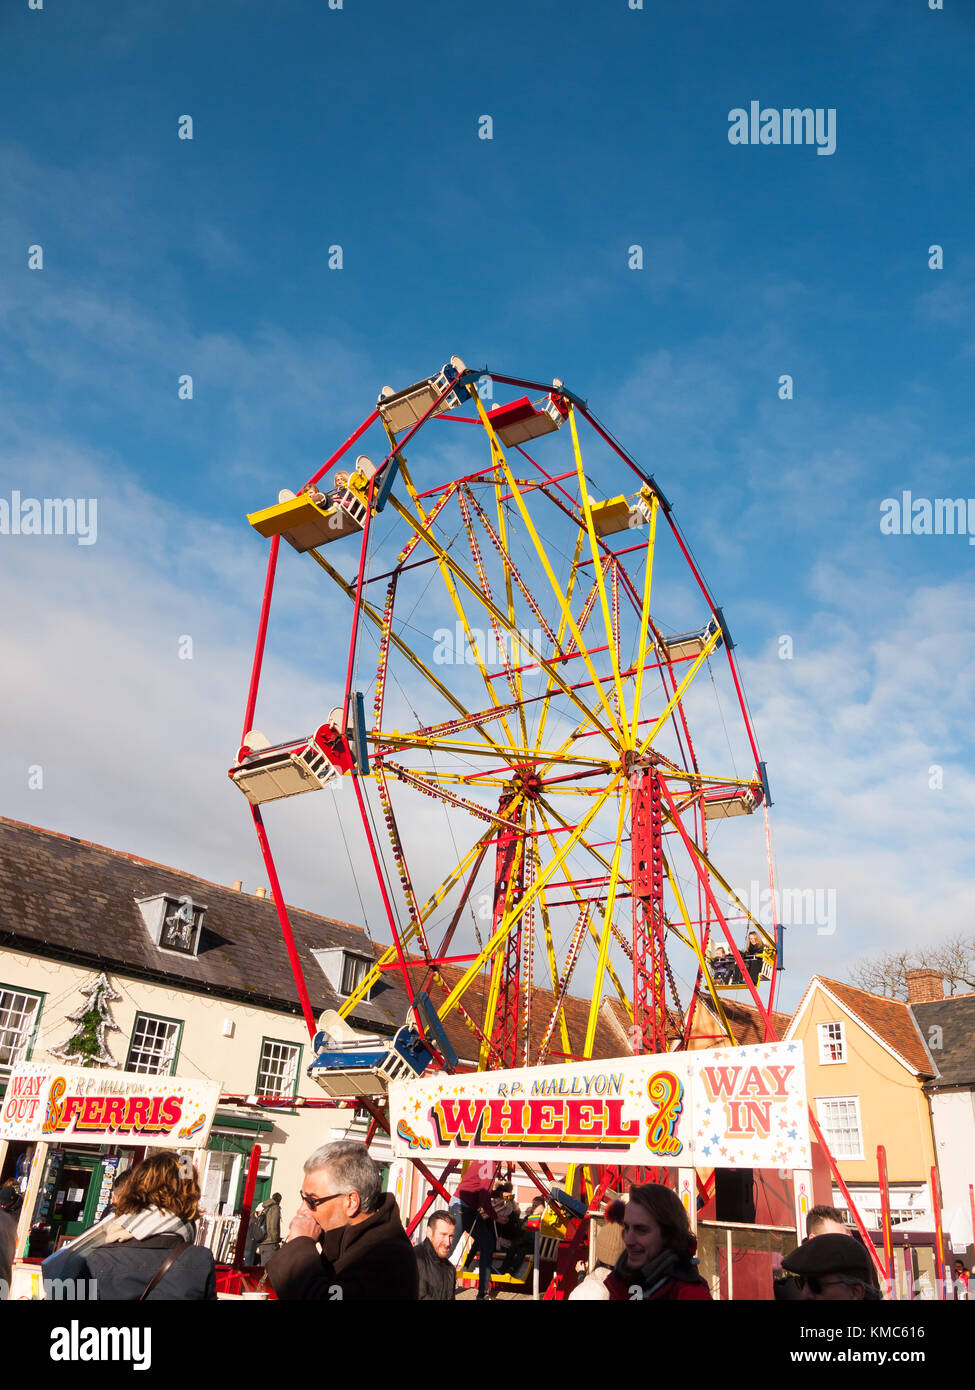 Rote und gelbe Karussell Rad aussen mit Menschen unter blauen Himmel Weihnachtsmarkt; Essex, England, Großbritannien Stockfoto